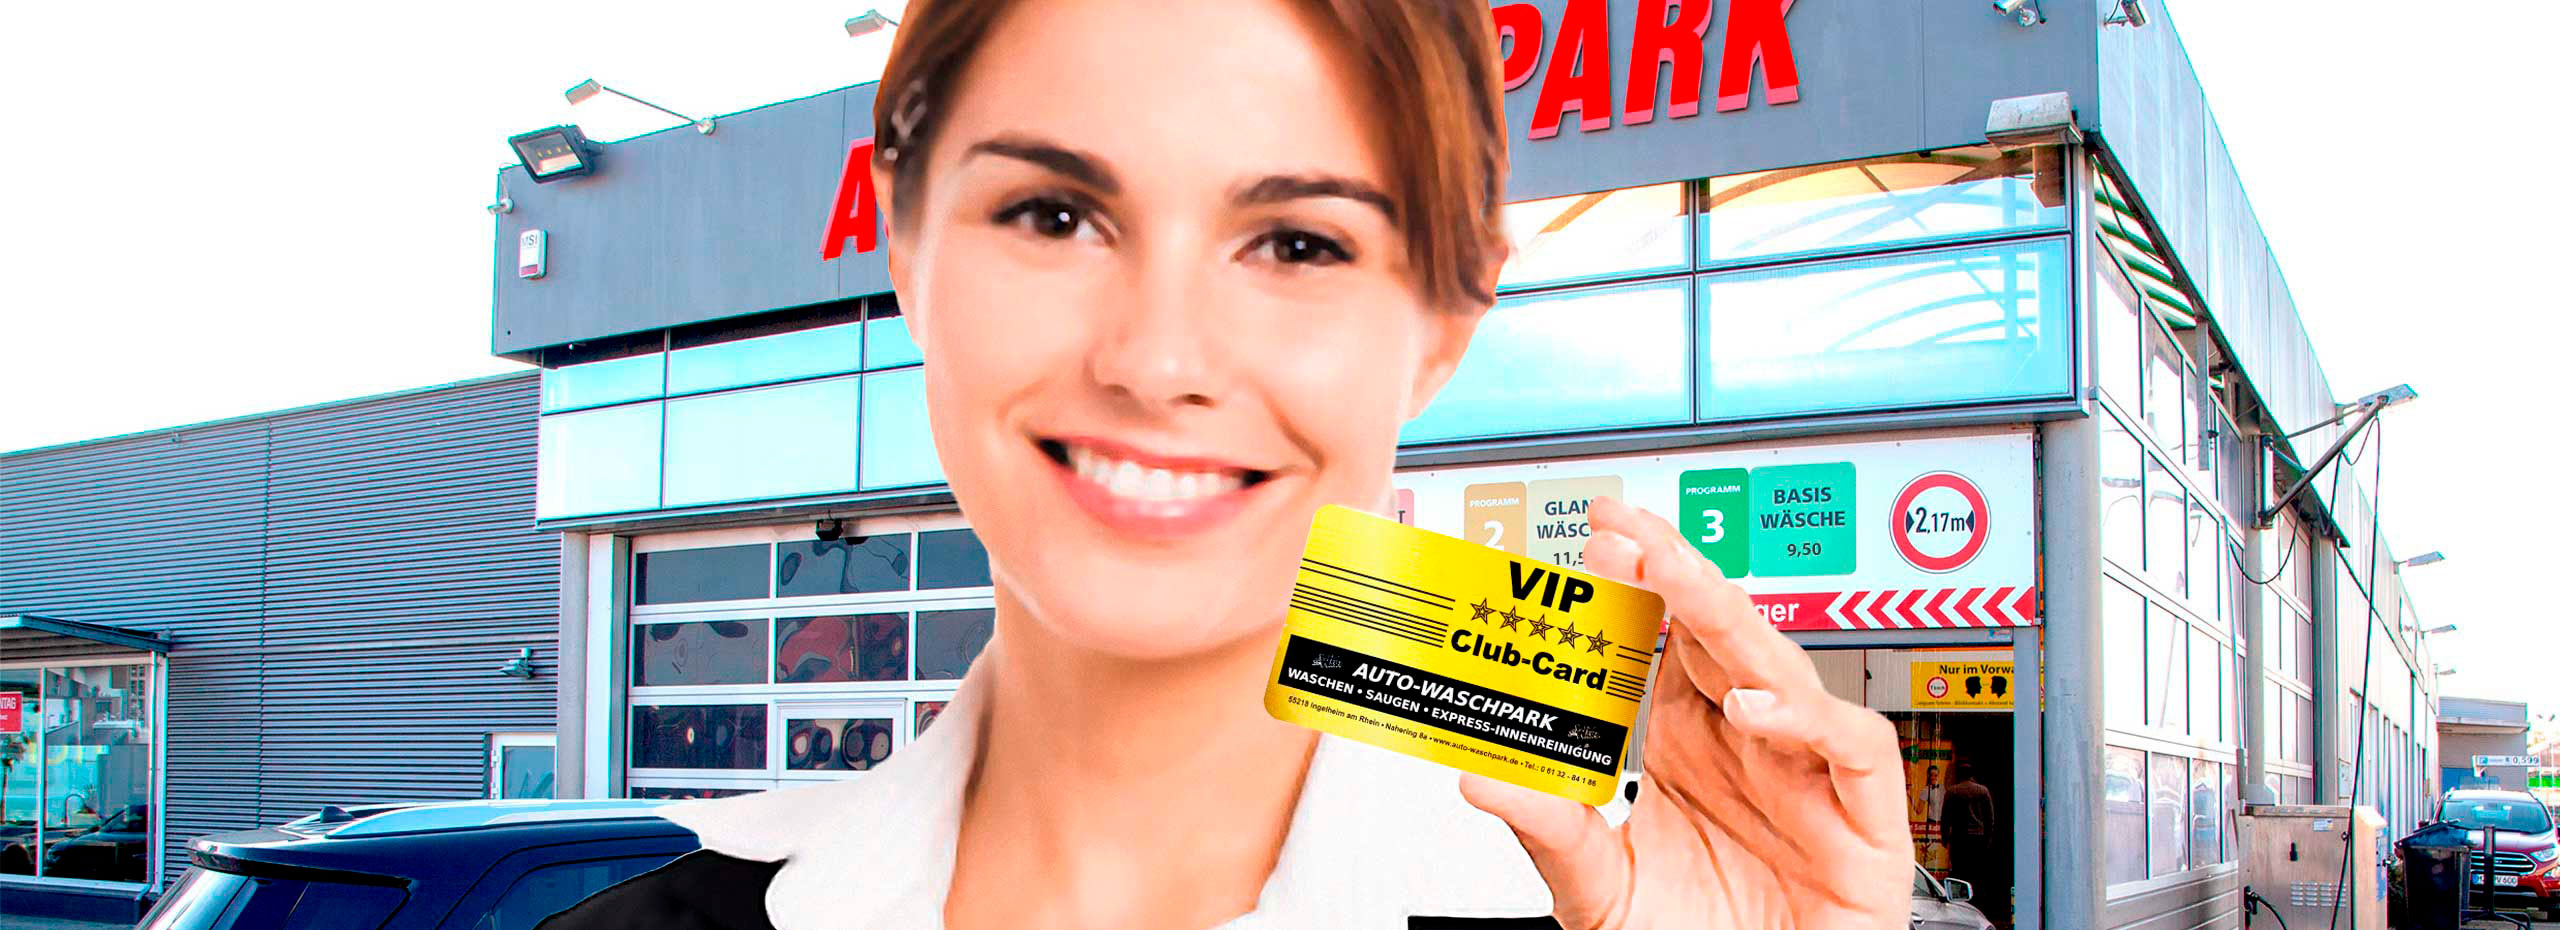 VIP-Card_Auto-Waschpark-Ingelheim